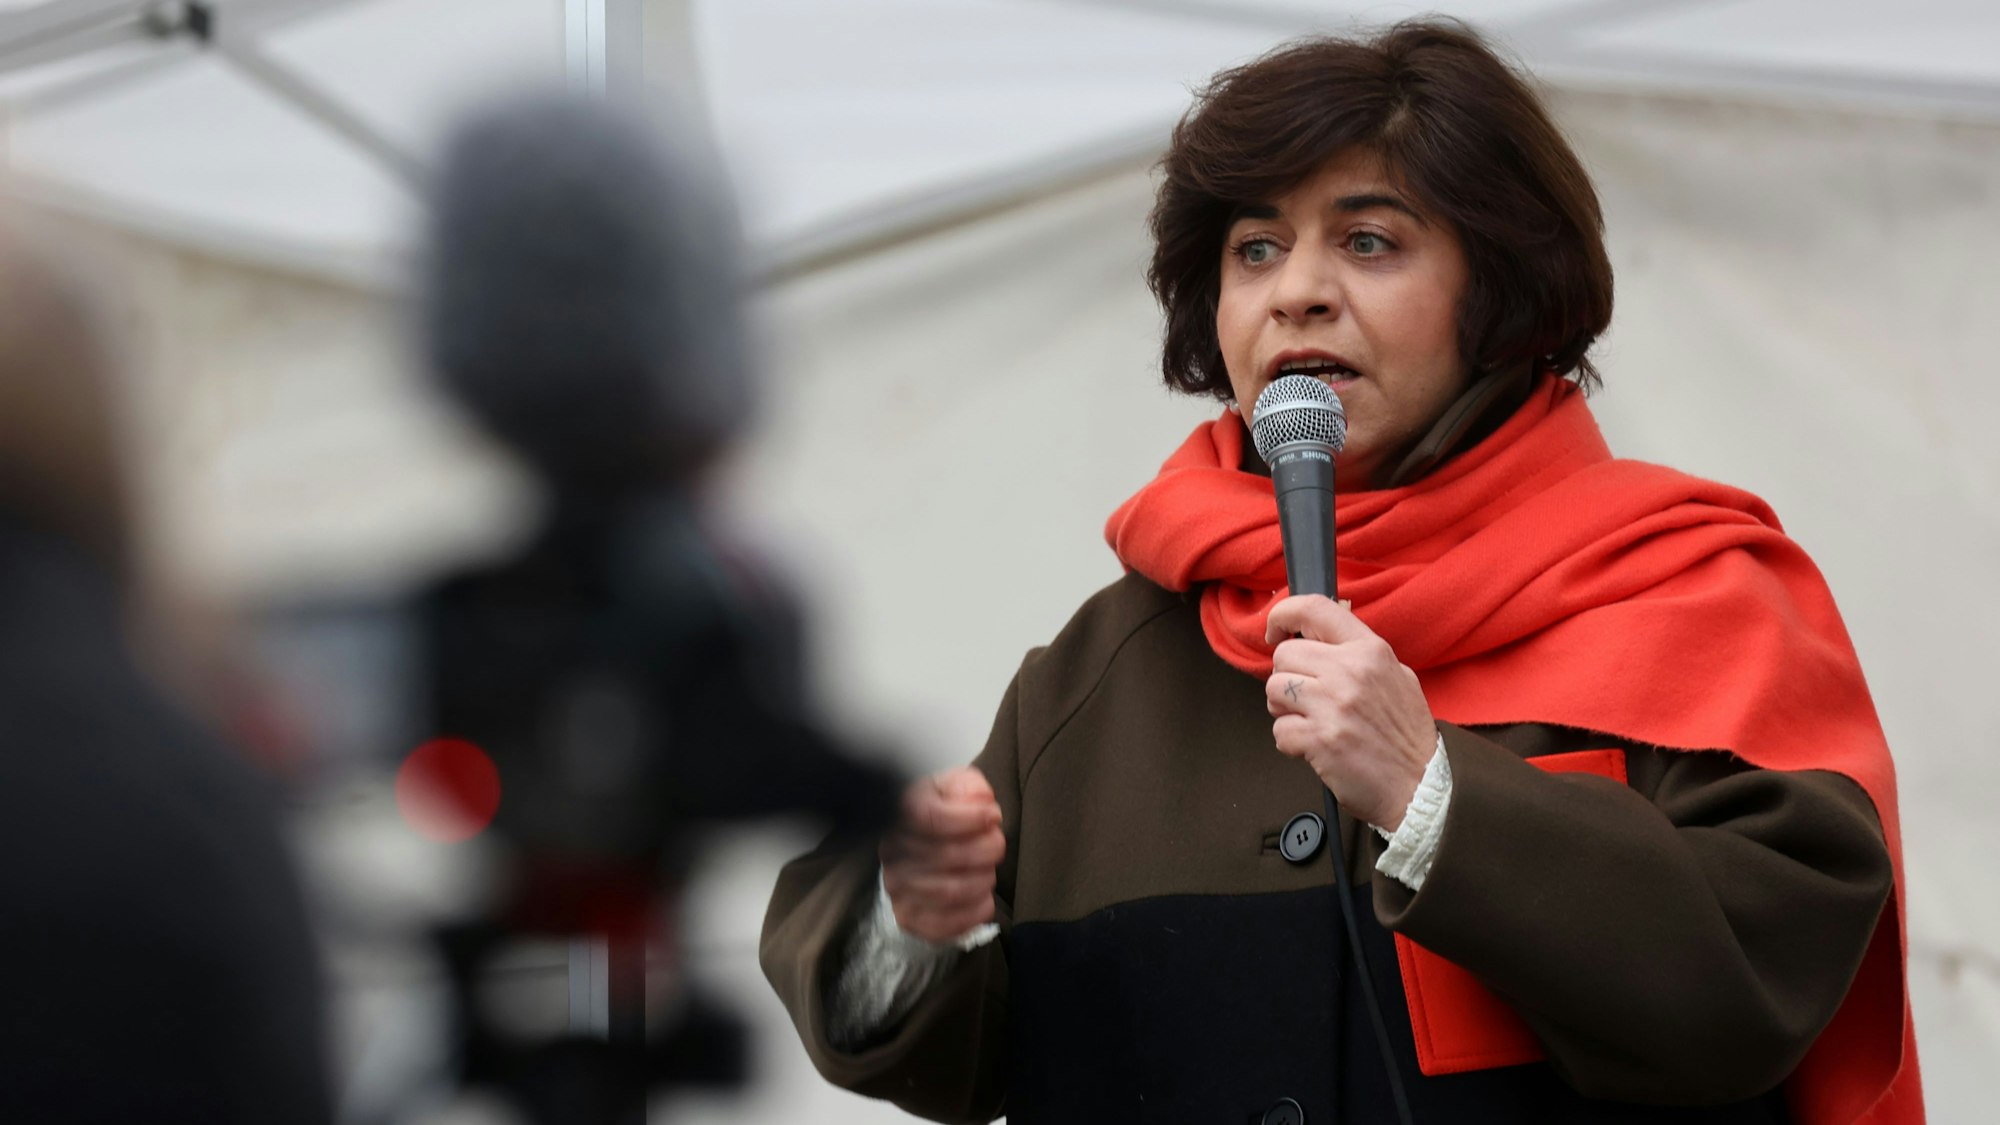 Berivan Aymaz, Vizepräsidentin des Landtags NRW